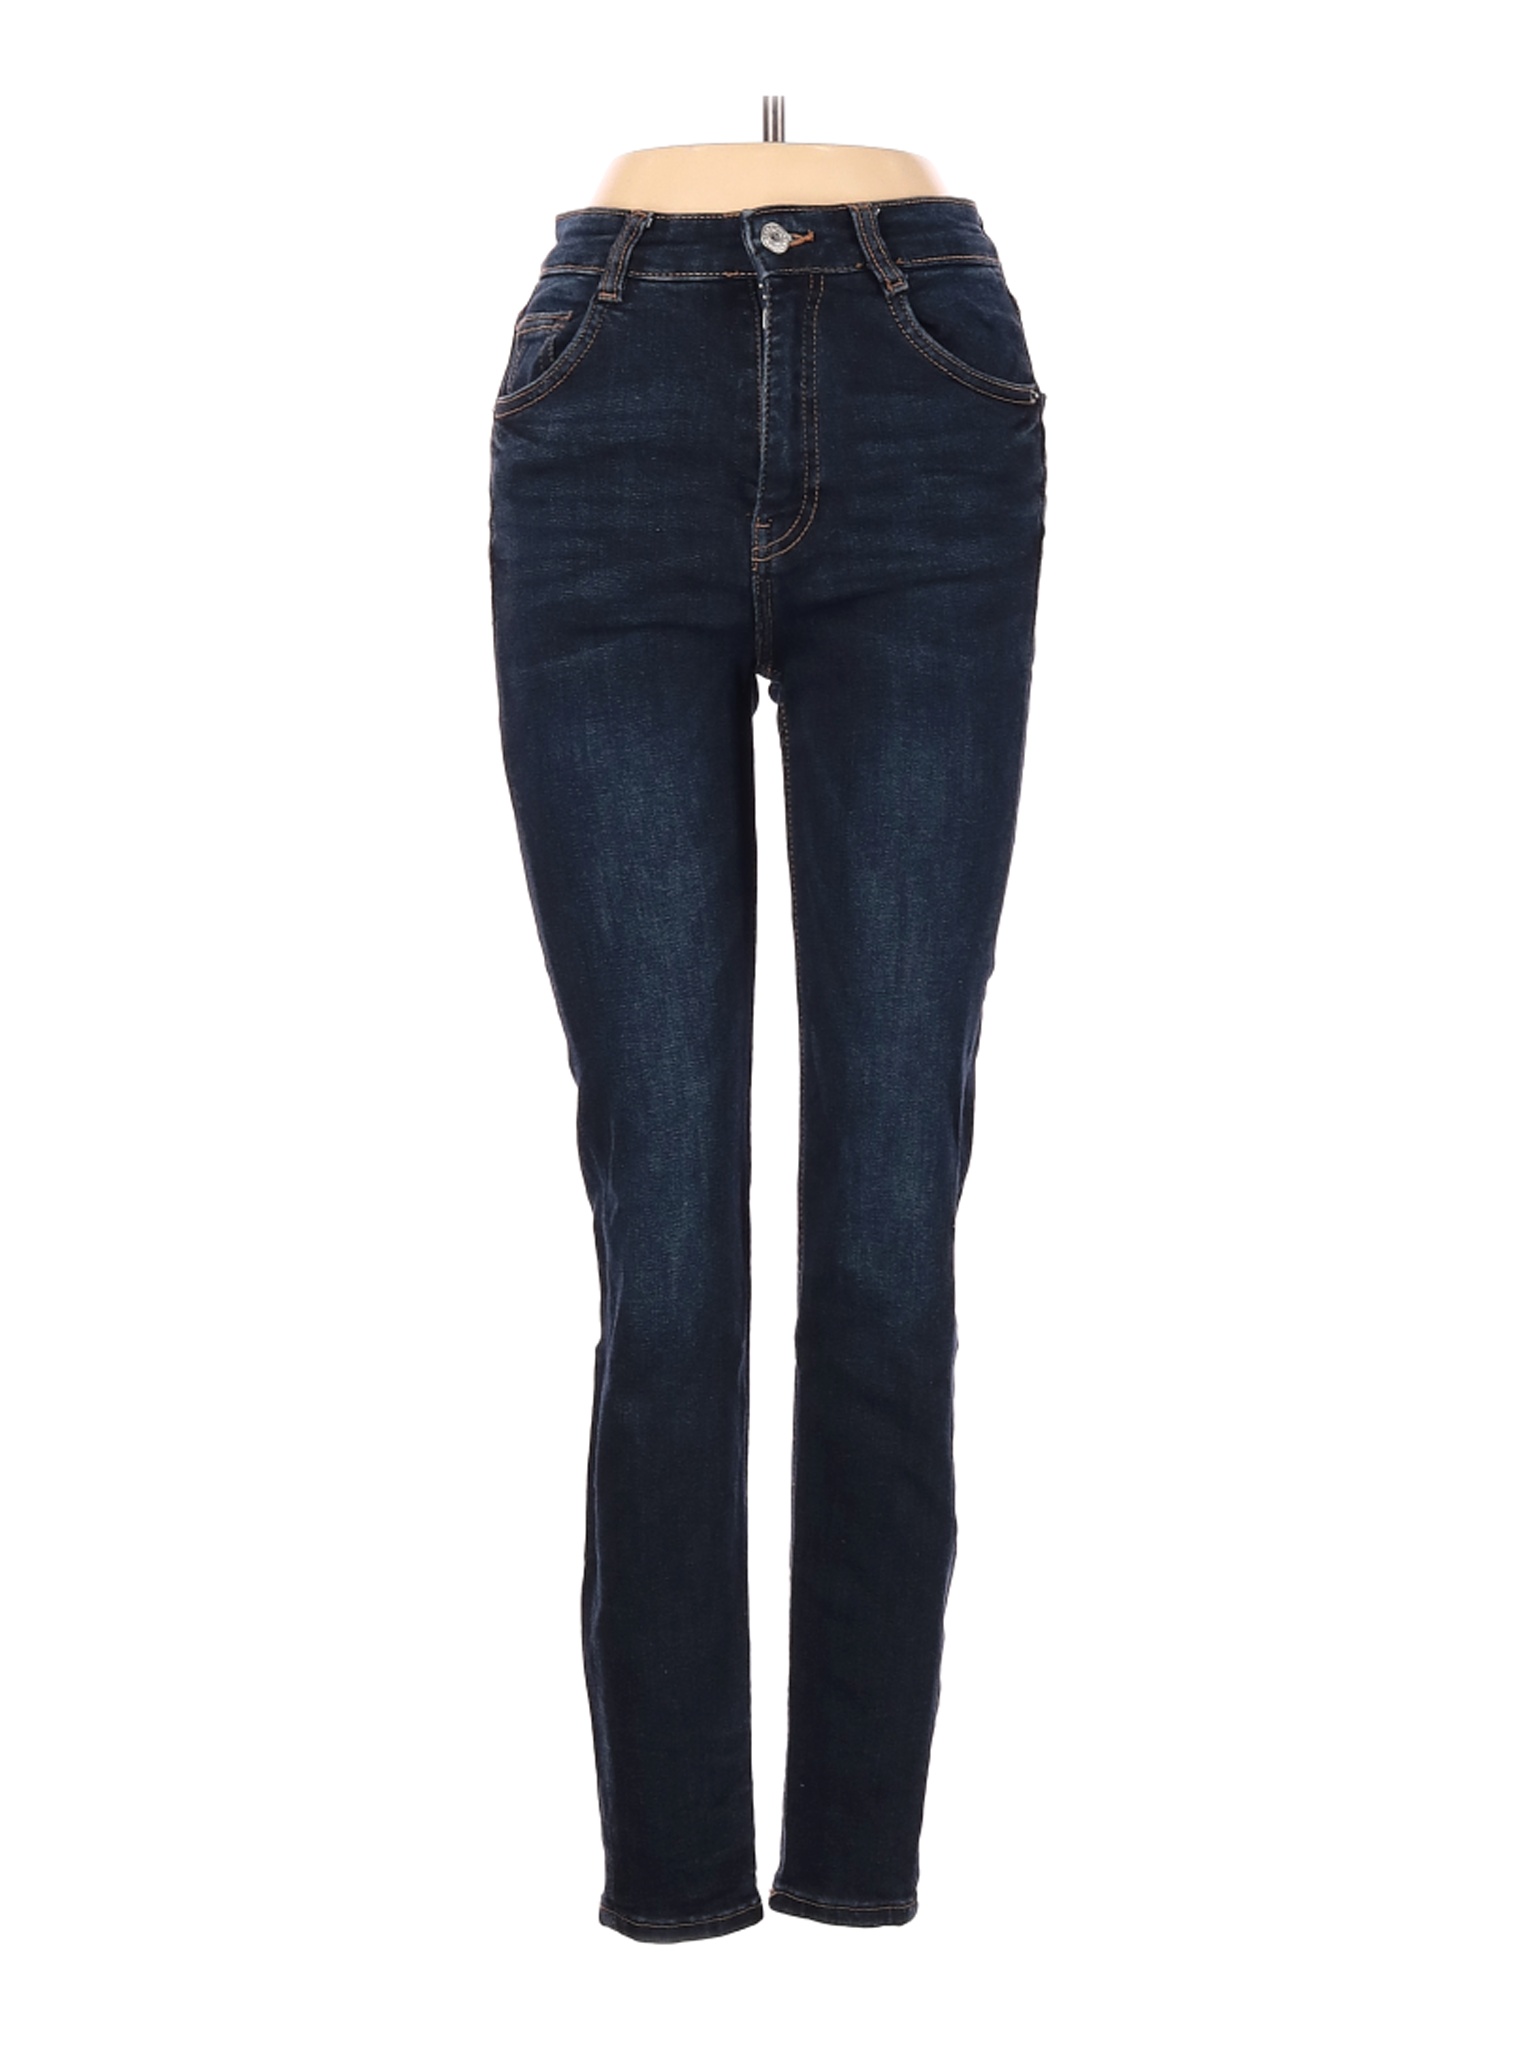 Zara Women Blue Jeans 0 | eBay